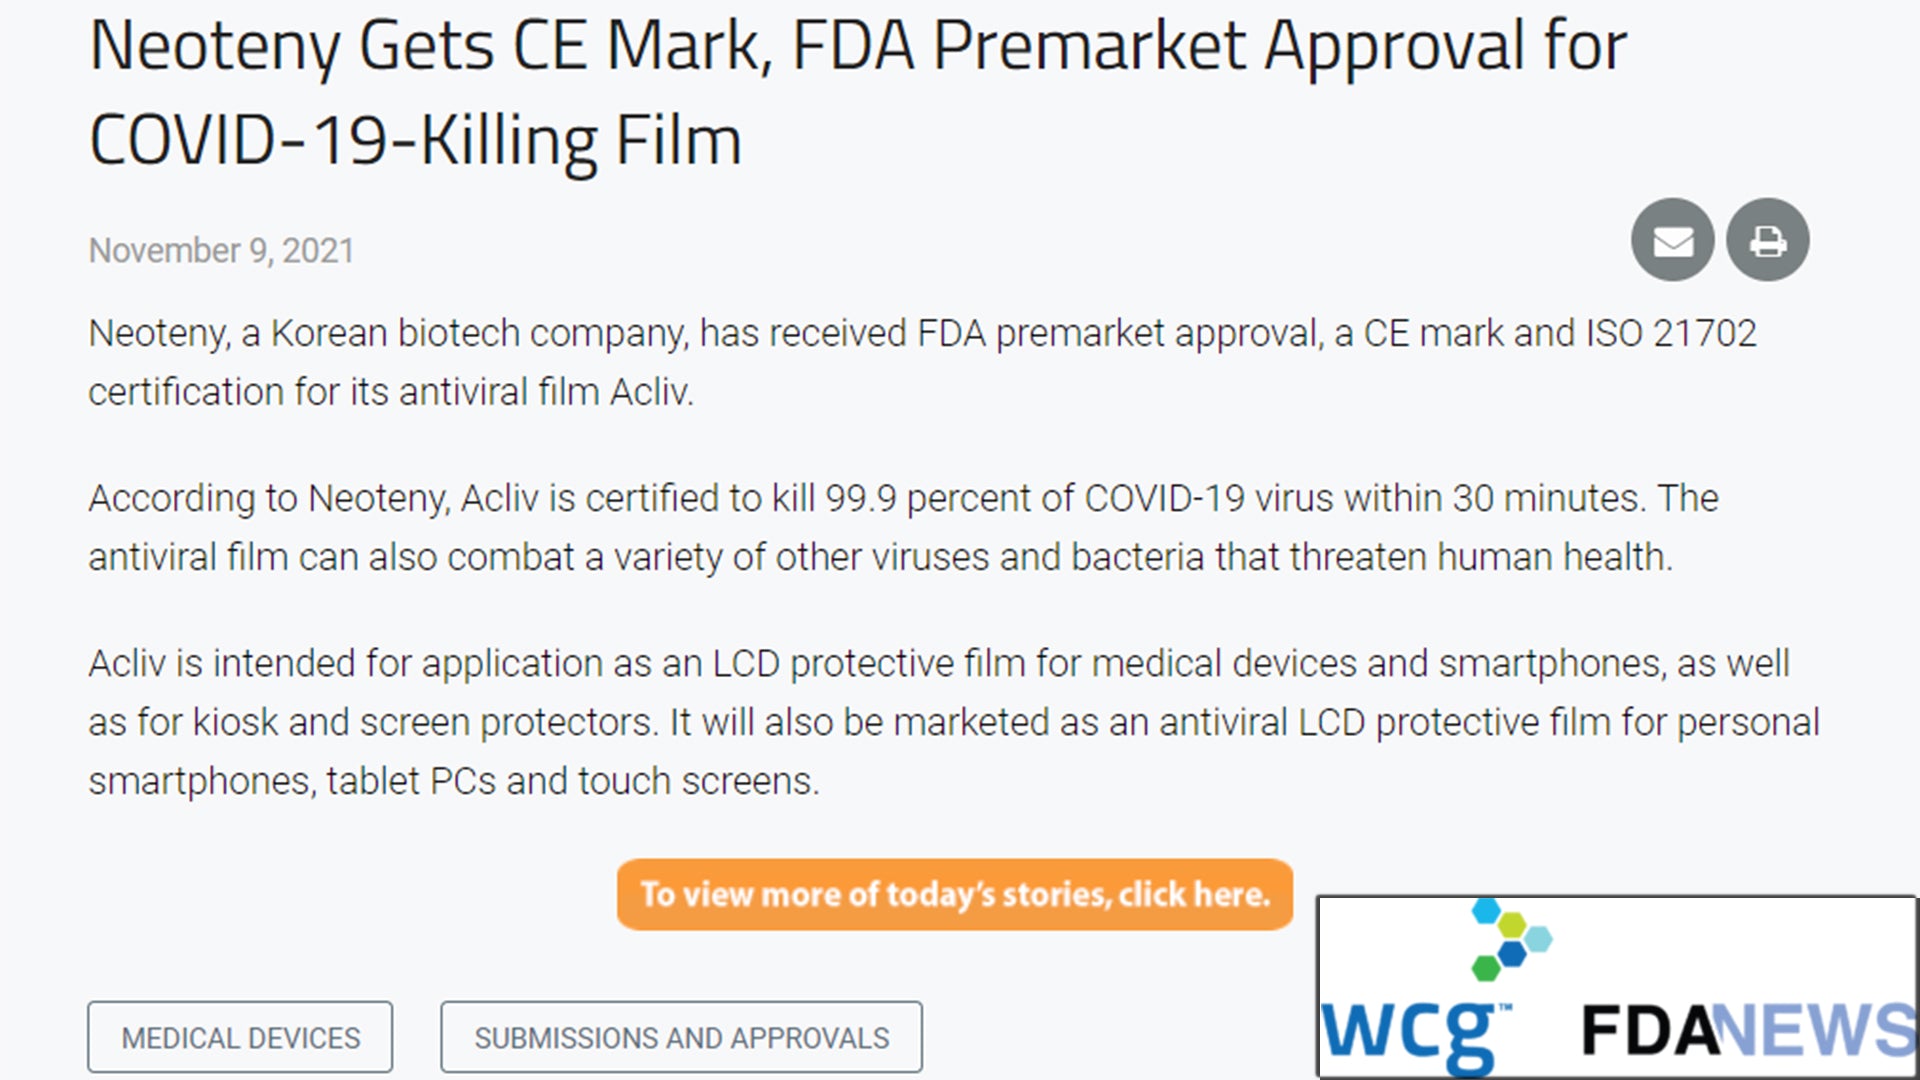 WCG FDANEWS - Neoteny Gets CE Mark, FDA Premarket Approval for COVID-19-Killing Film